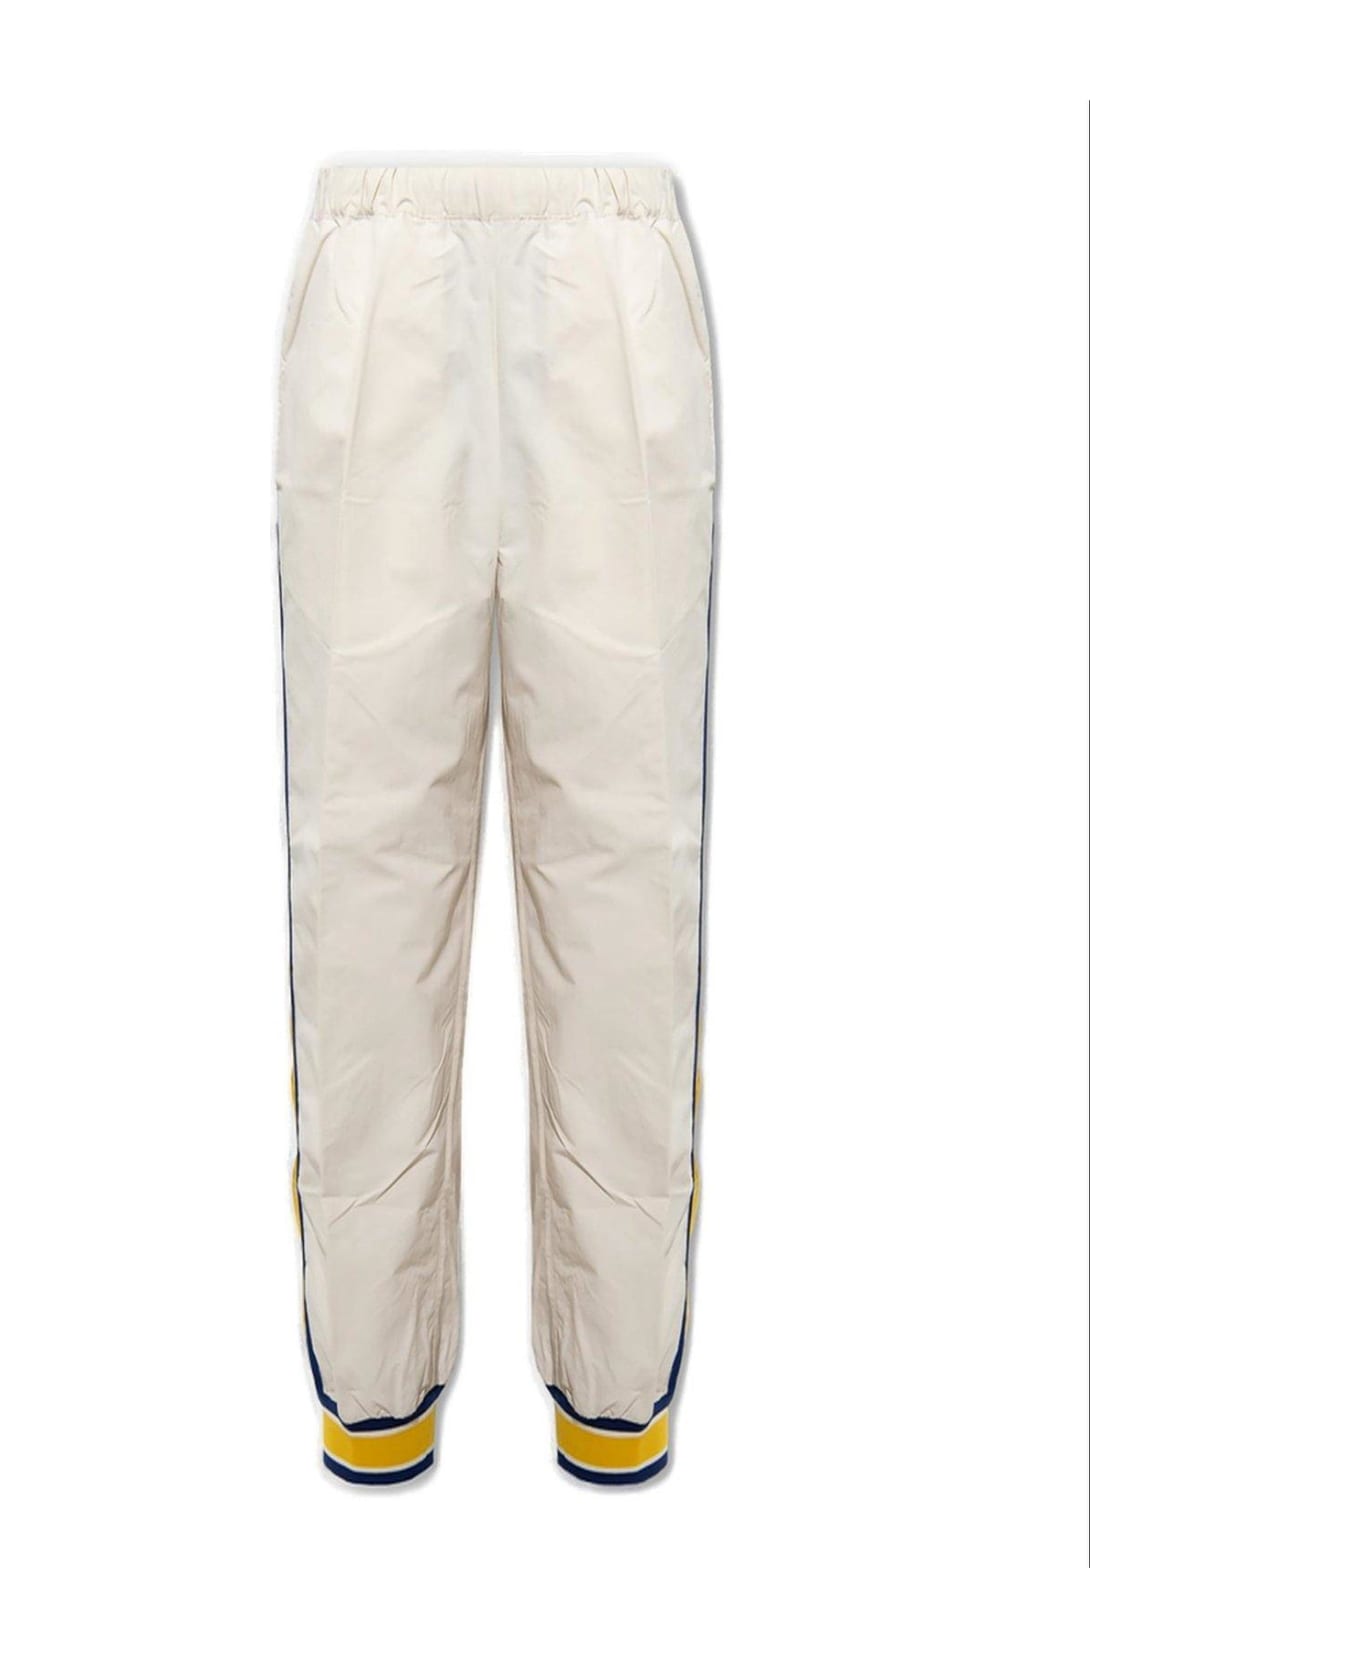 Gucci Side Stripes Detail Sweatpants - White ボトムス